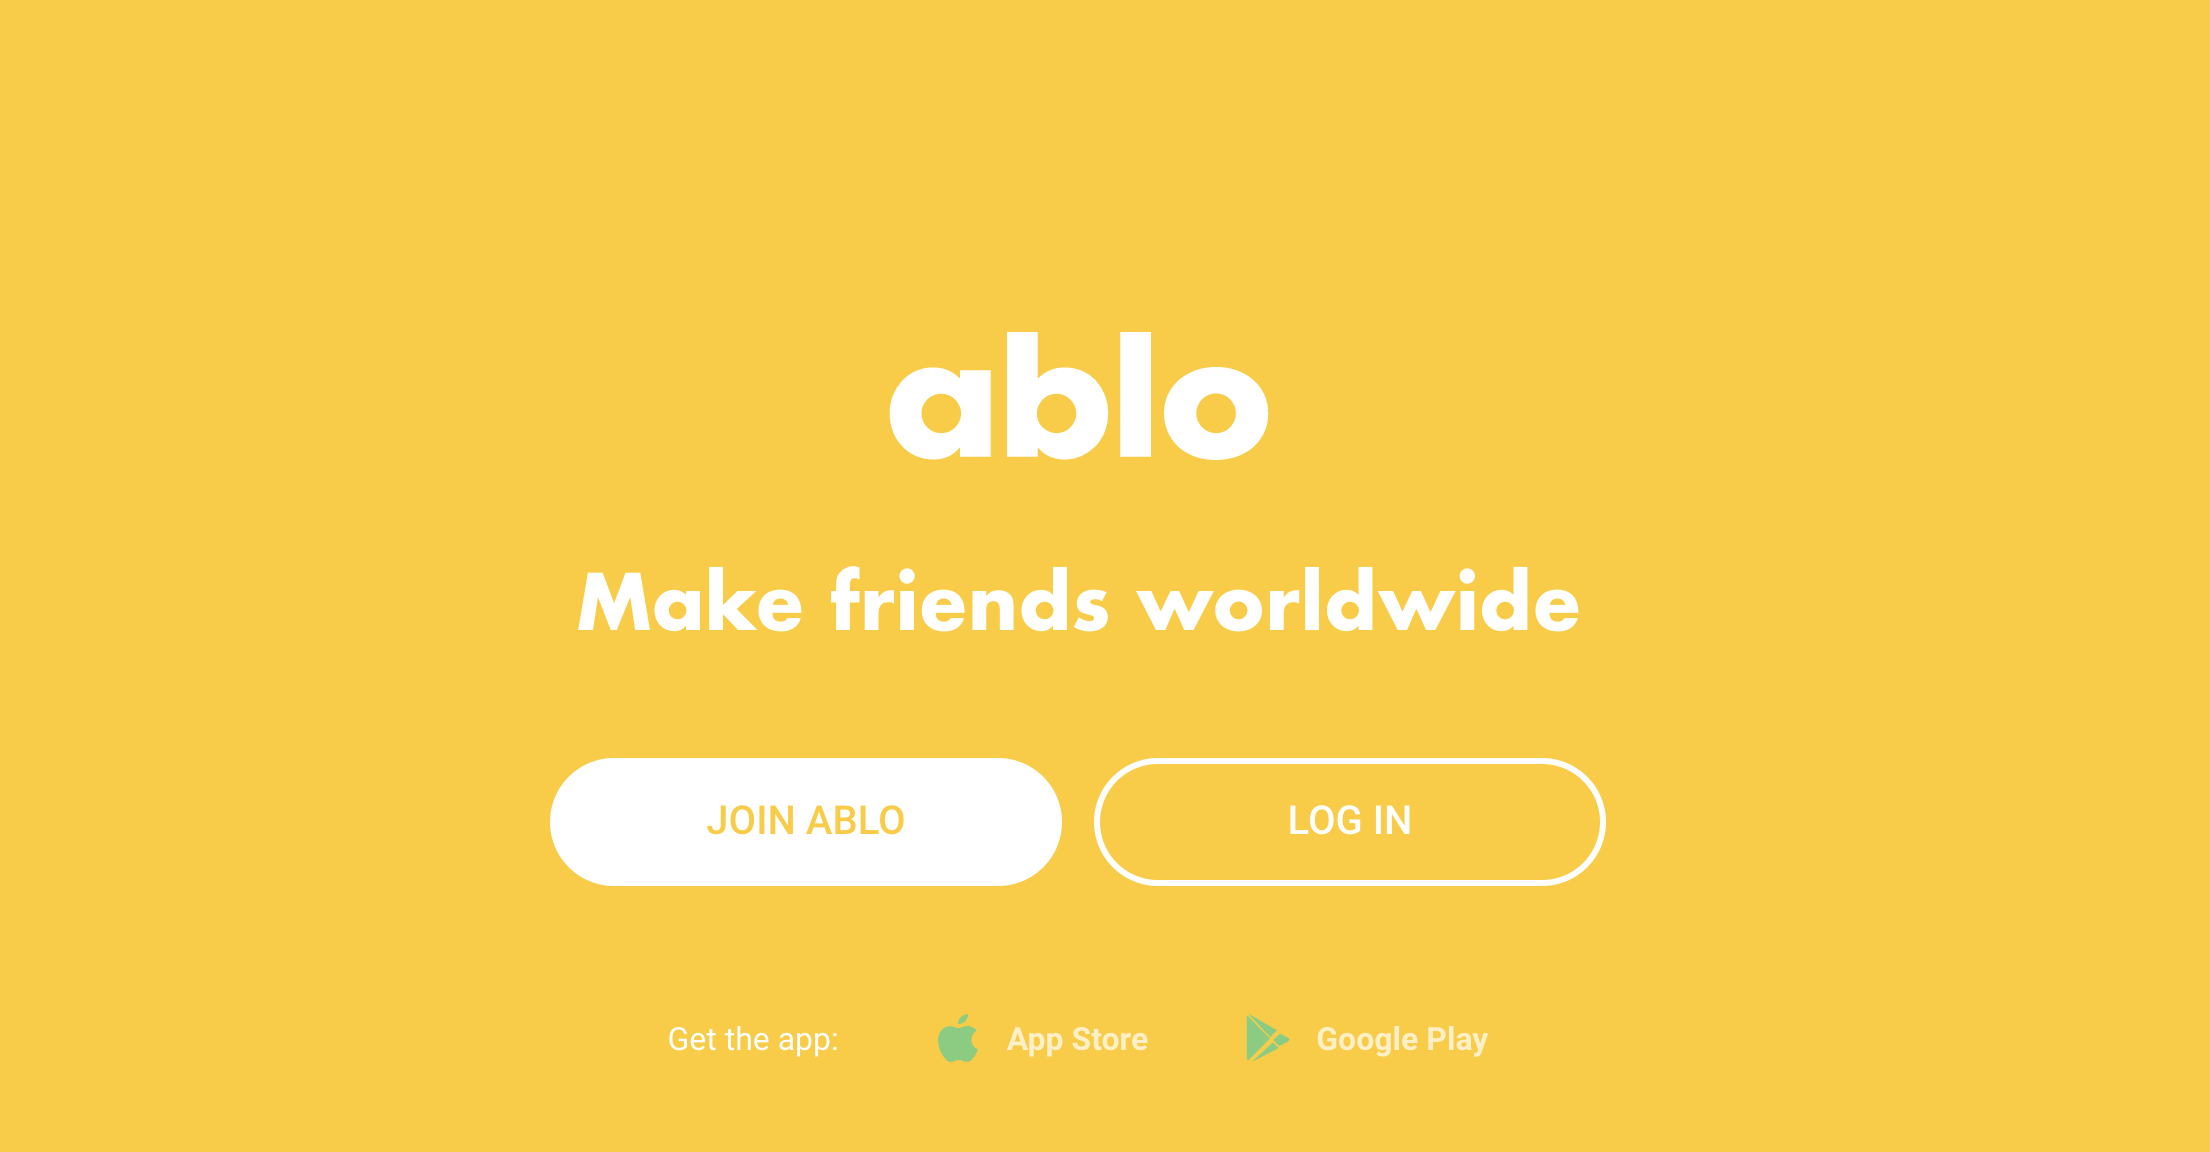 Ablo app